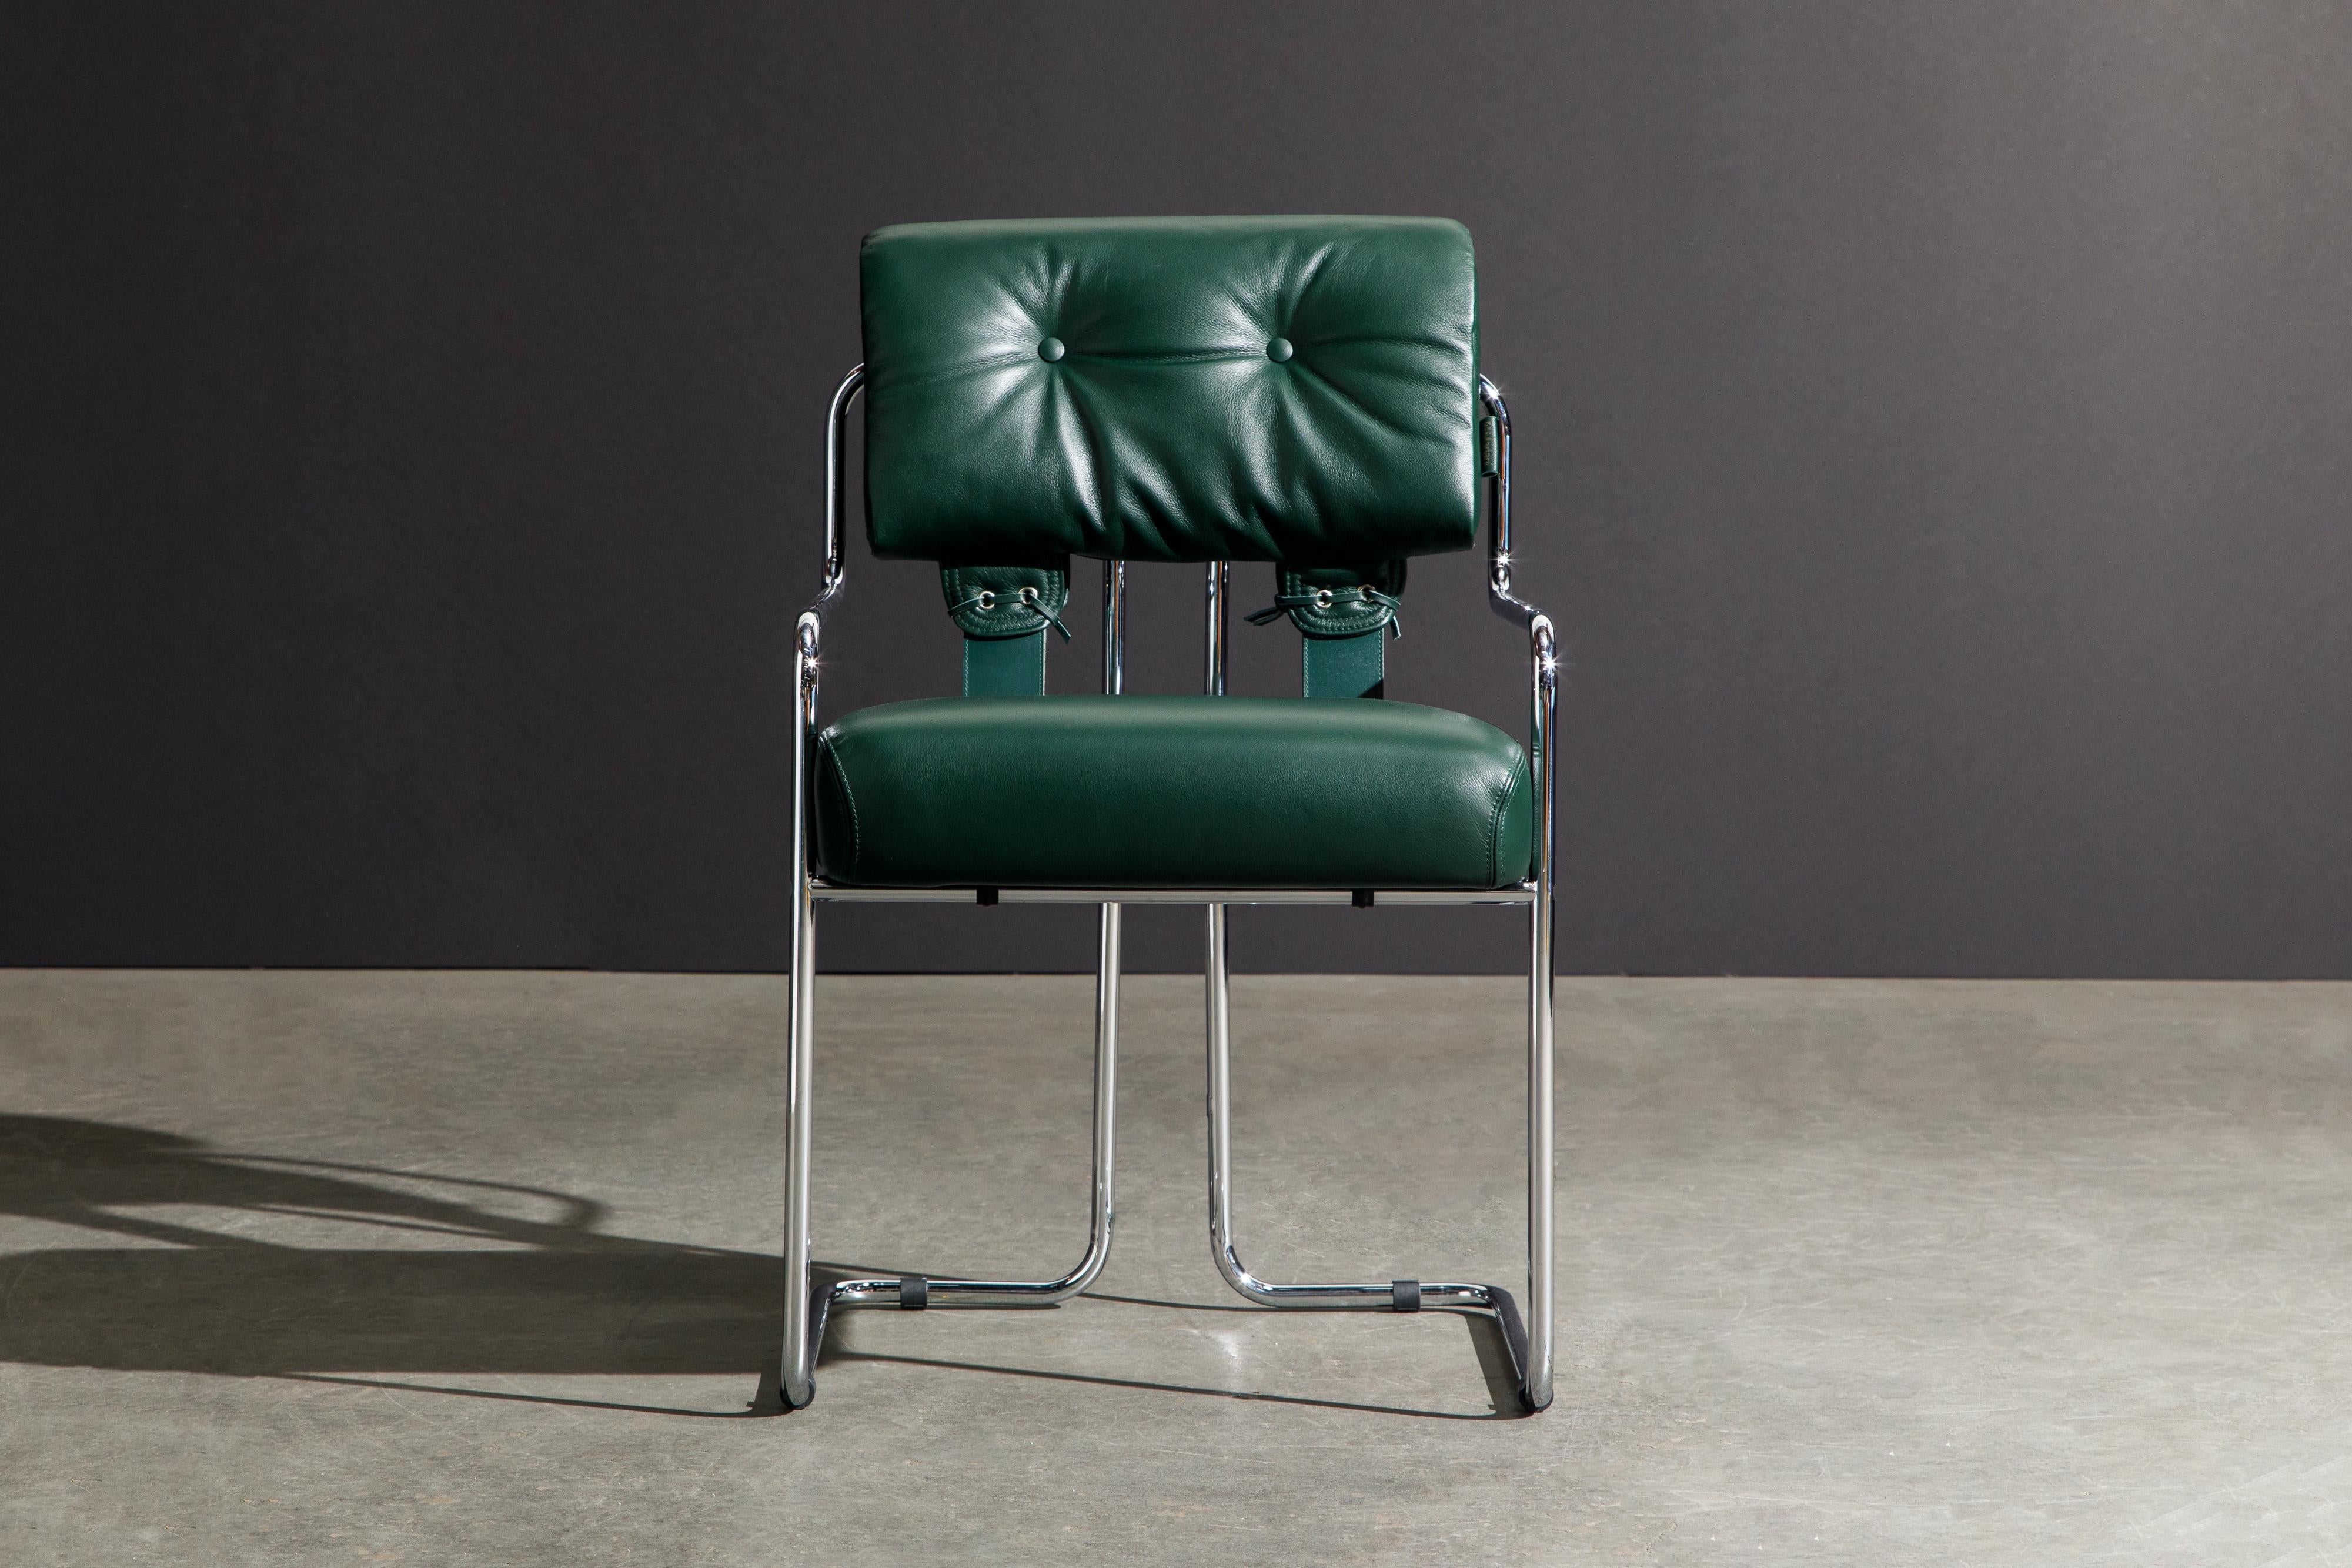 Ensemble de quatre fauteuils Tucroma en cuir vert émeraude avec châssis en chrome poli. Les sièges et les dossiers sont recouverts de cuir vert souple et sont fixés à de gracieuses armatures tubulaires en acier poli. Ils sont également reliés par de